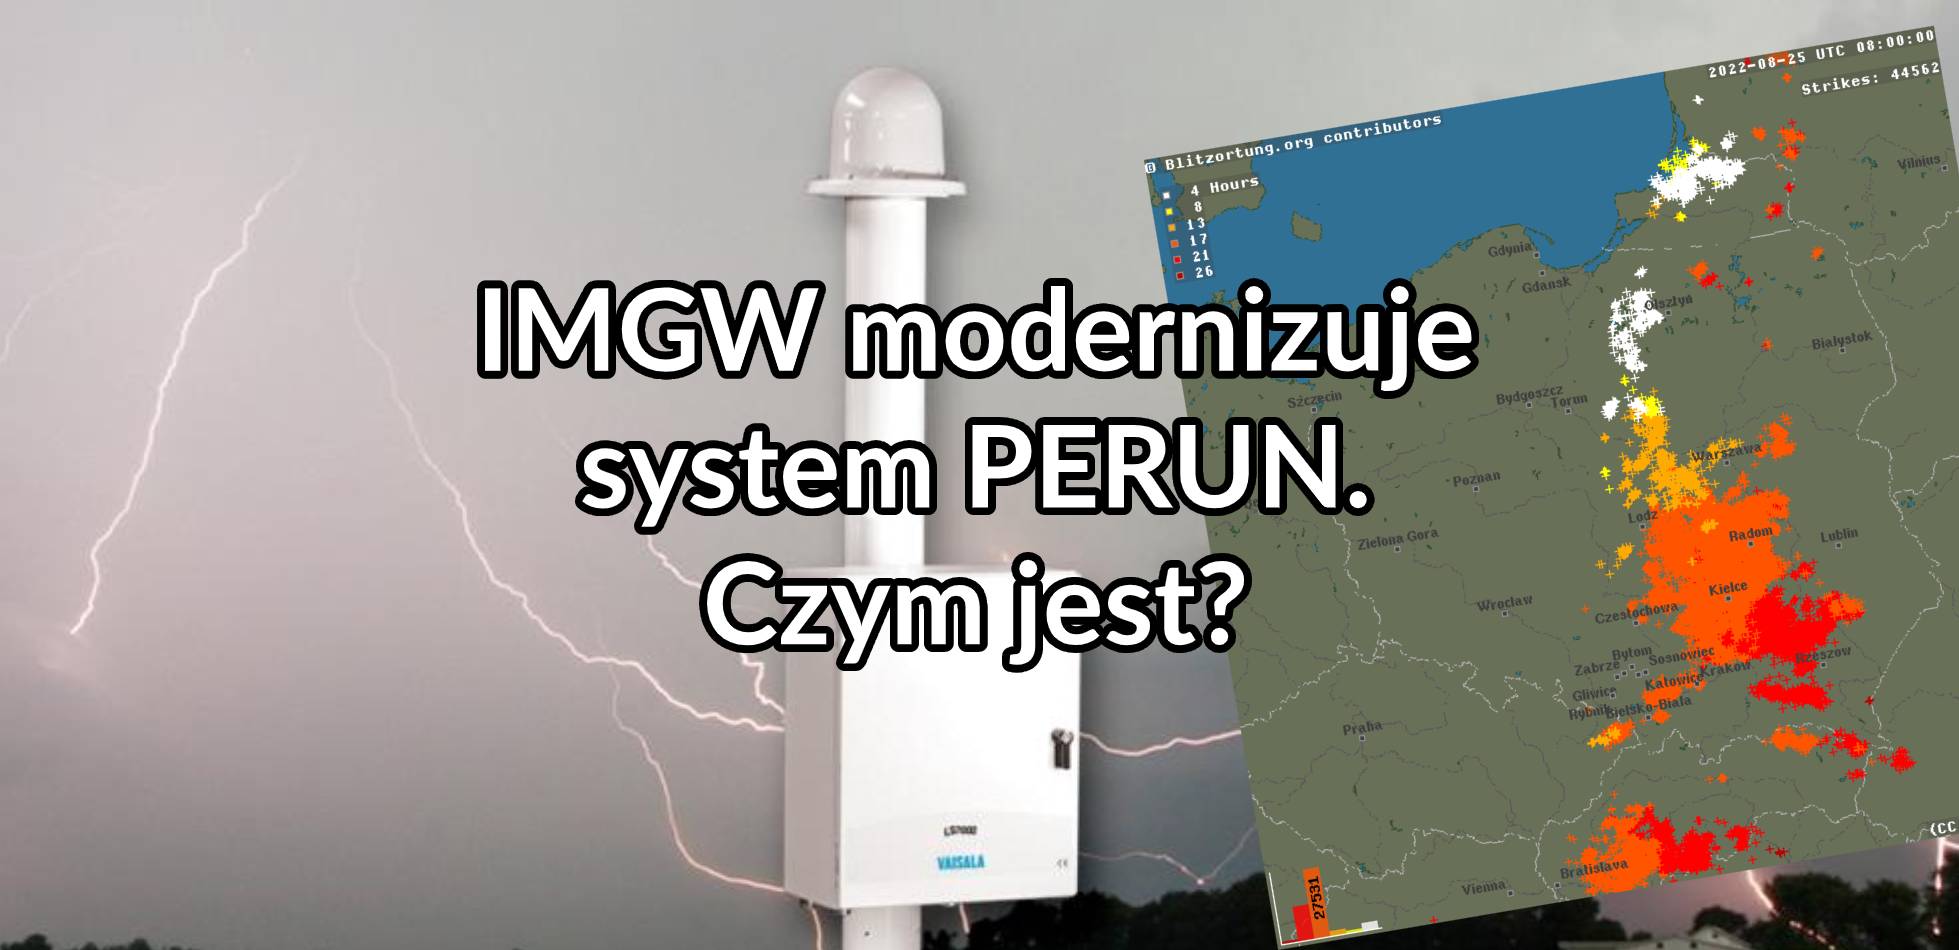 IMGW modernizuje system PERUN. Czym jest?